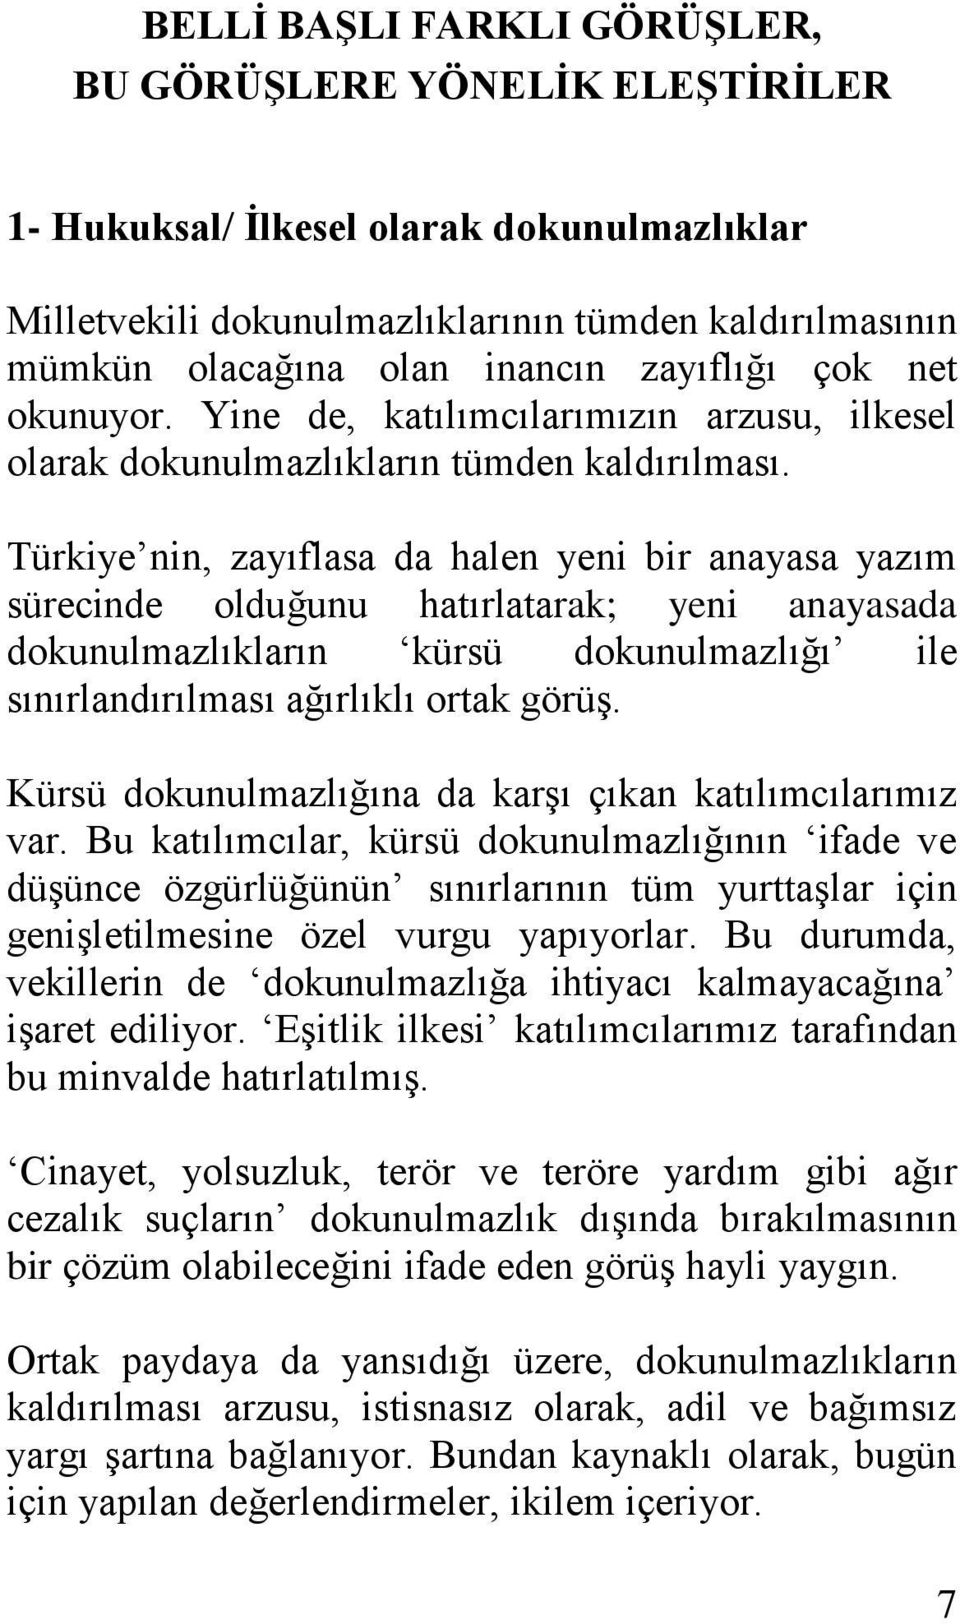 Türkiye nin, zayıflasa da halen yeni bir anayasa yazım sürecinde olduğunu hatırlatarak; yeni anayasada dokunulmazlıkların kürsü dokunulmazlığı ile sınırlandırılması ağırlıklı ortak görüş.